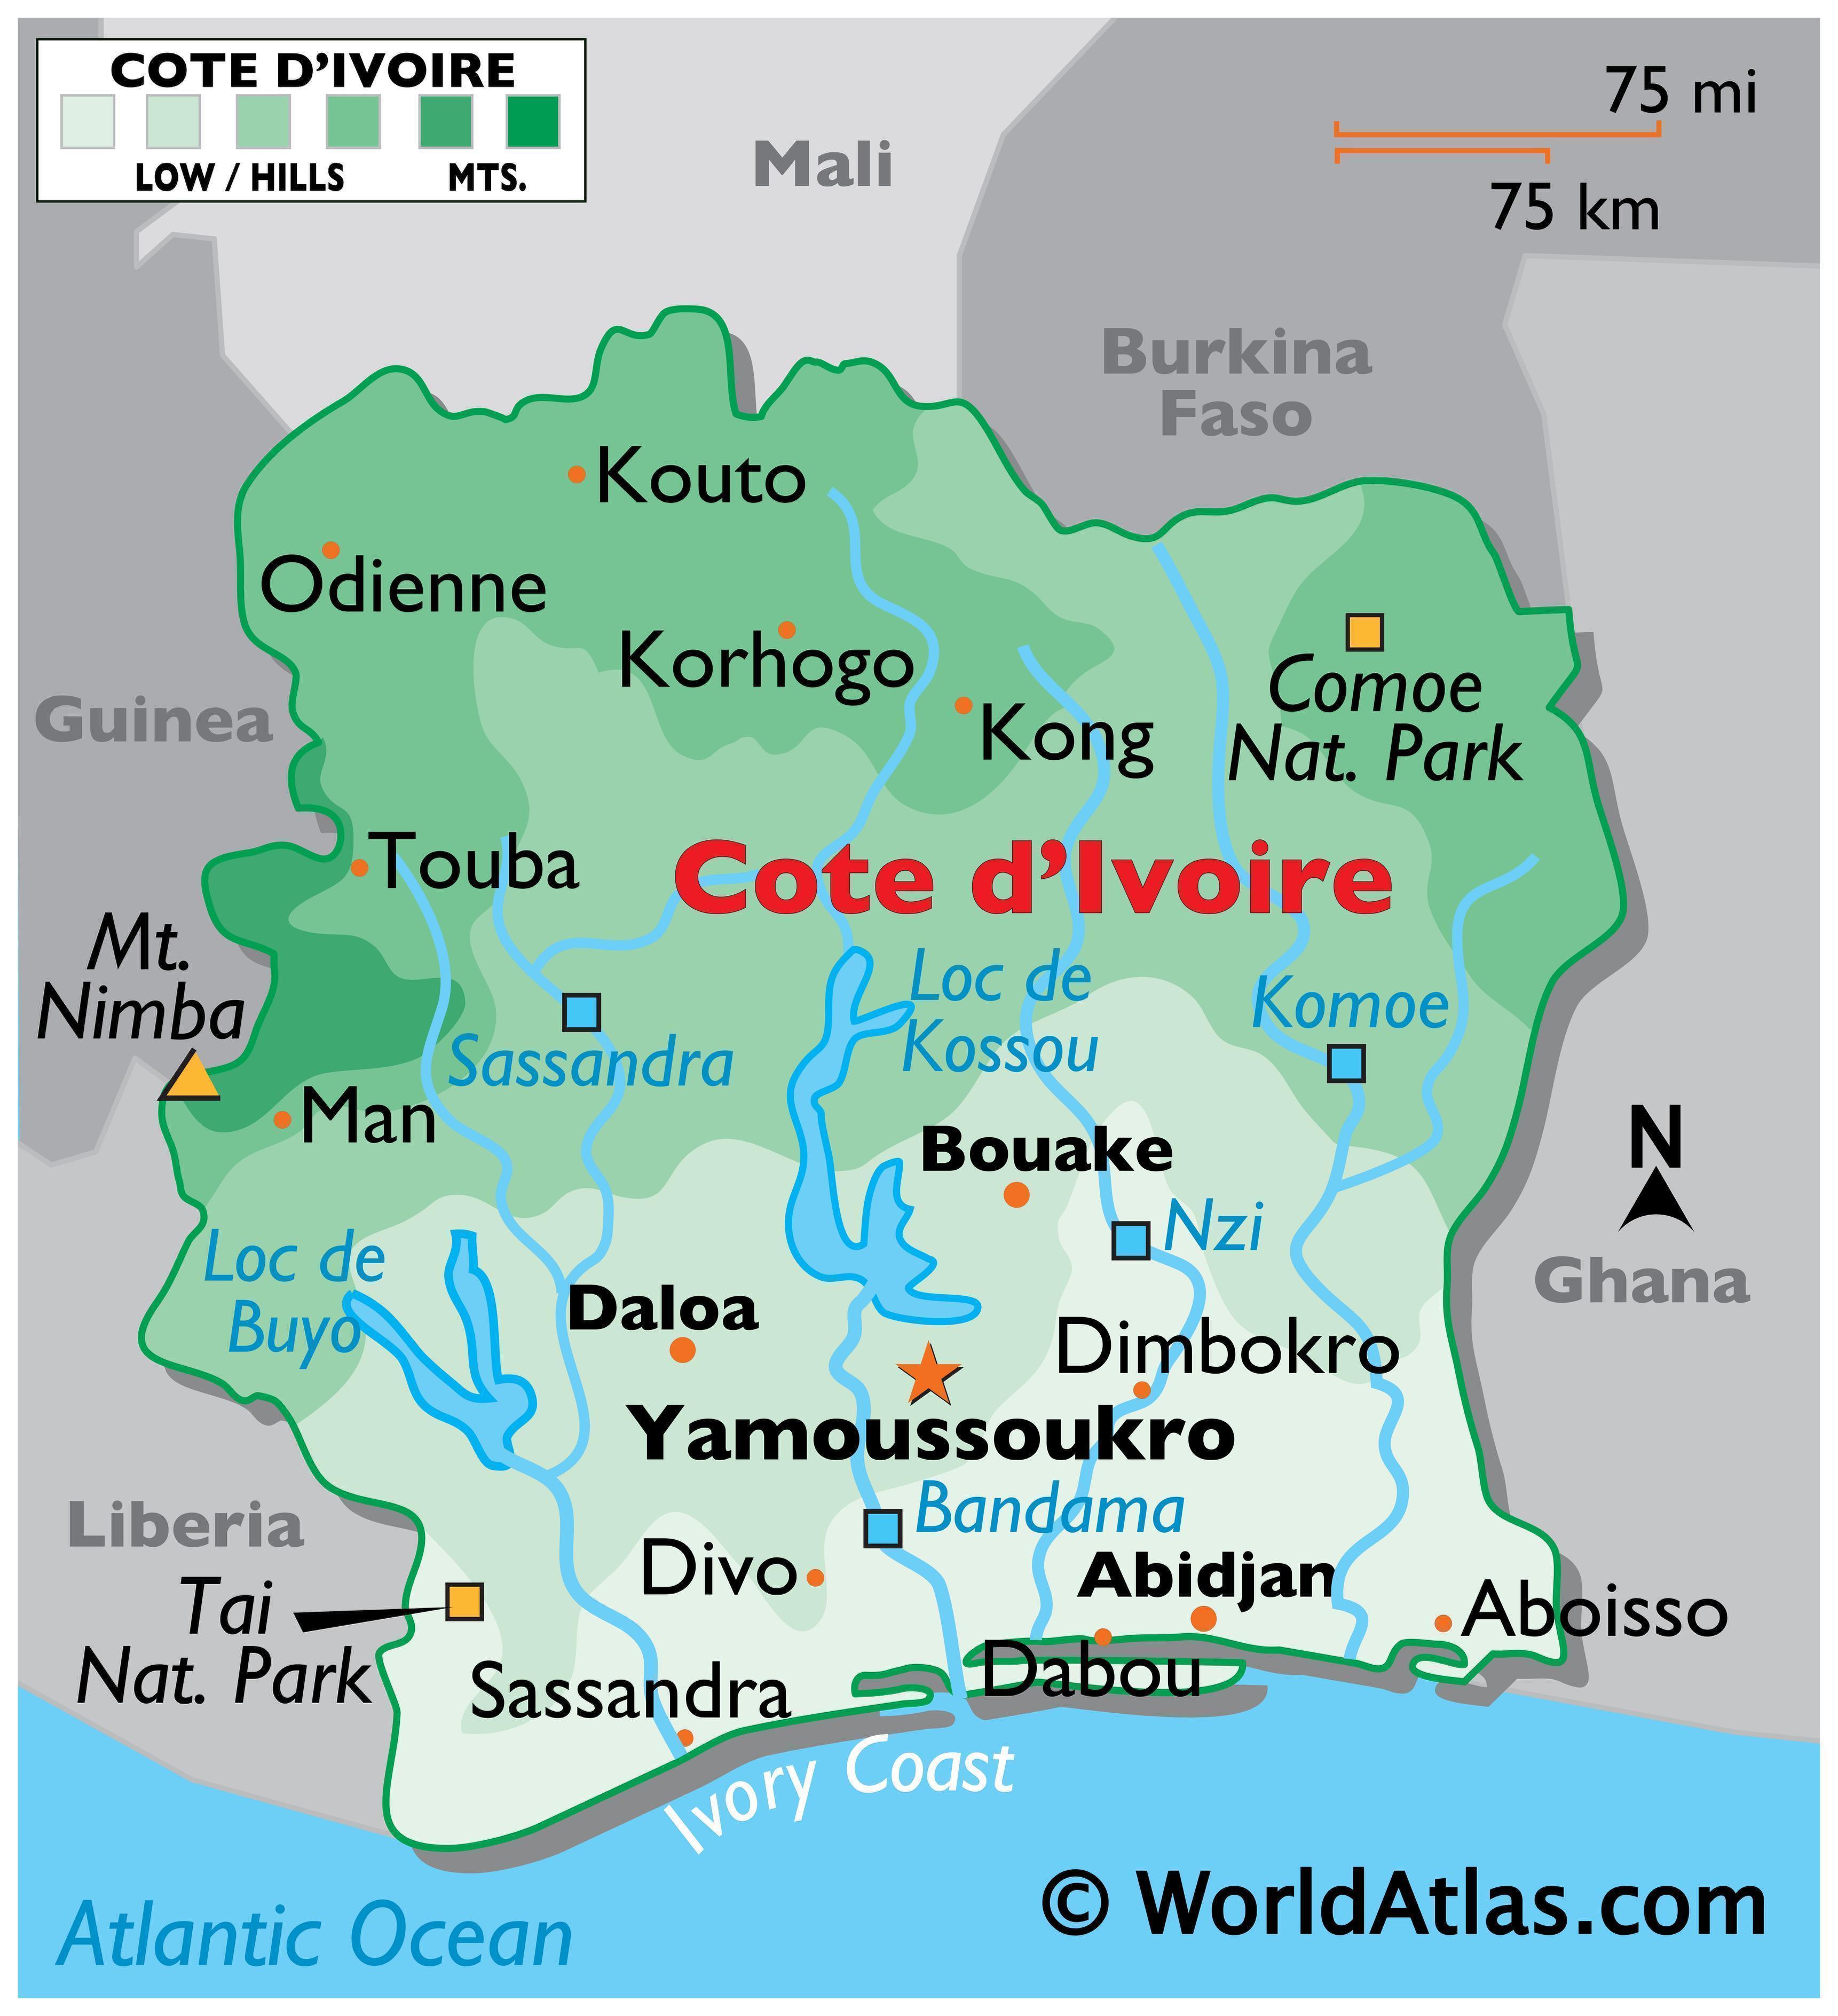 Cote d'Ivoire